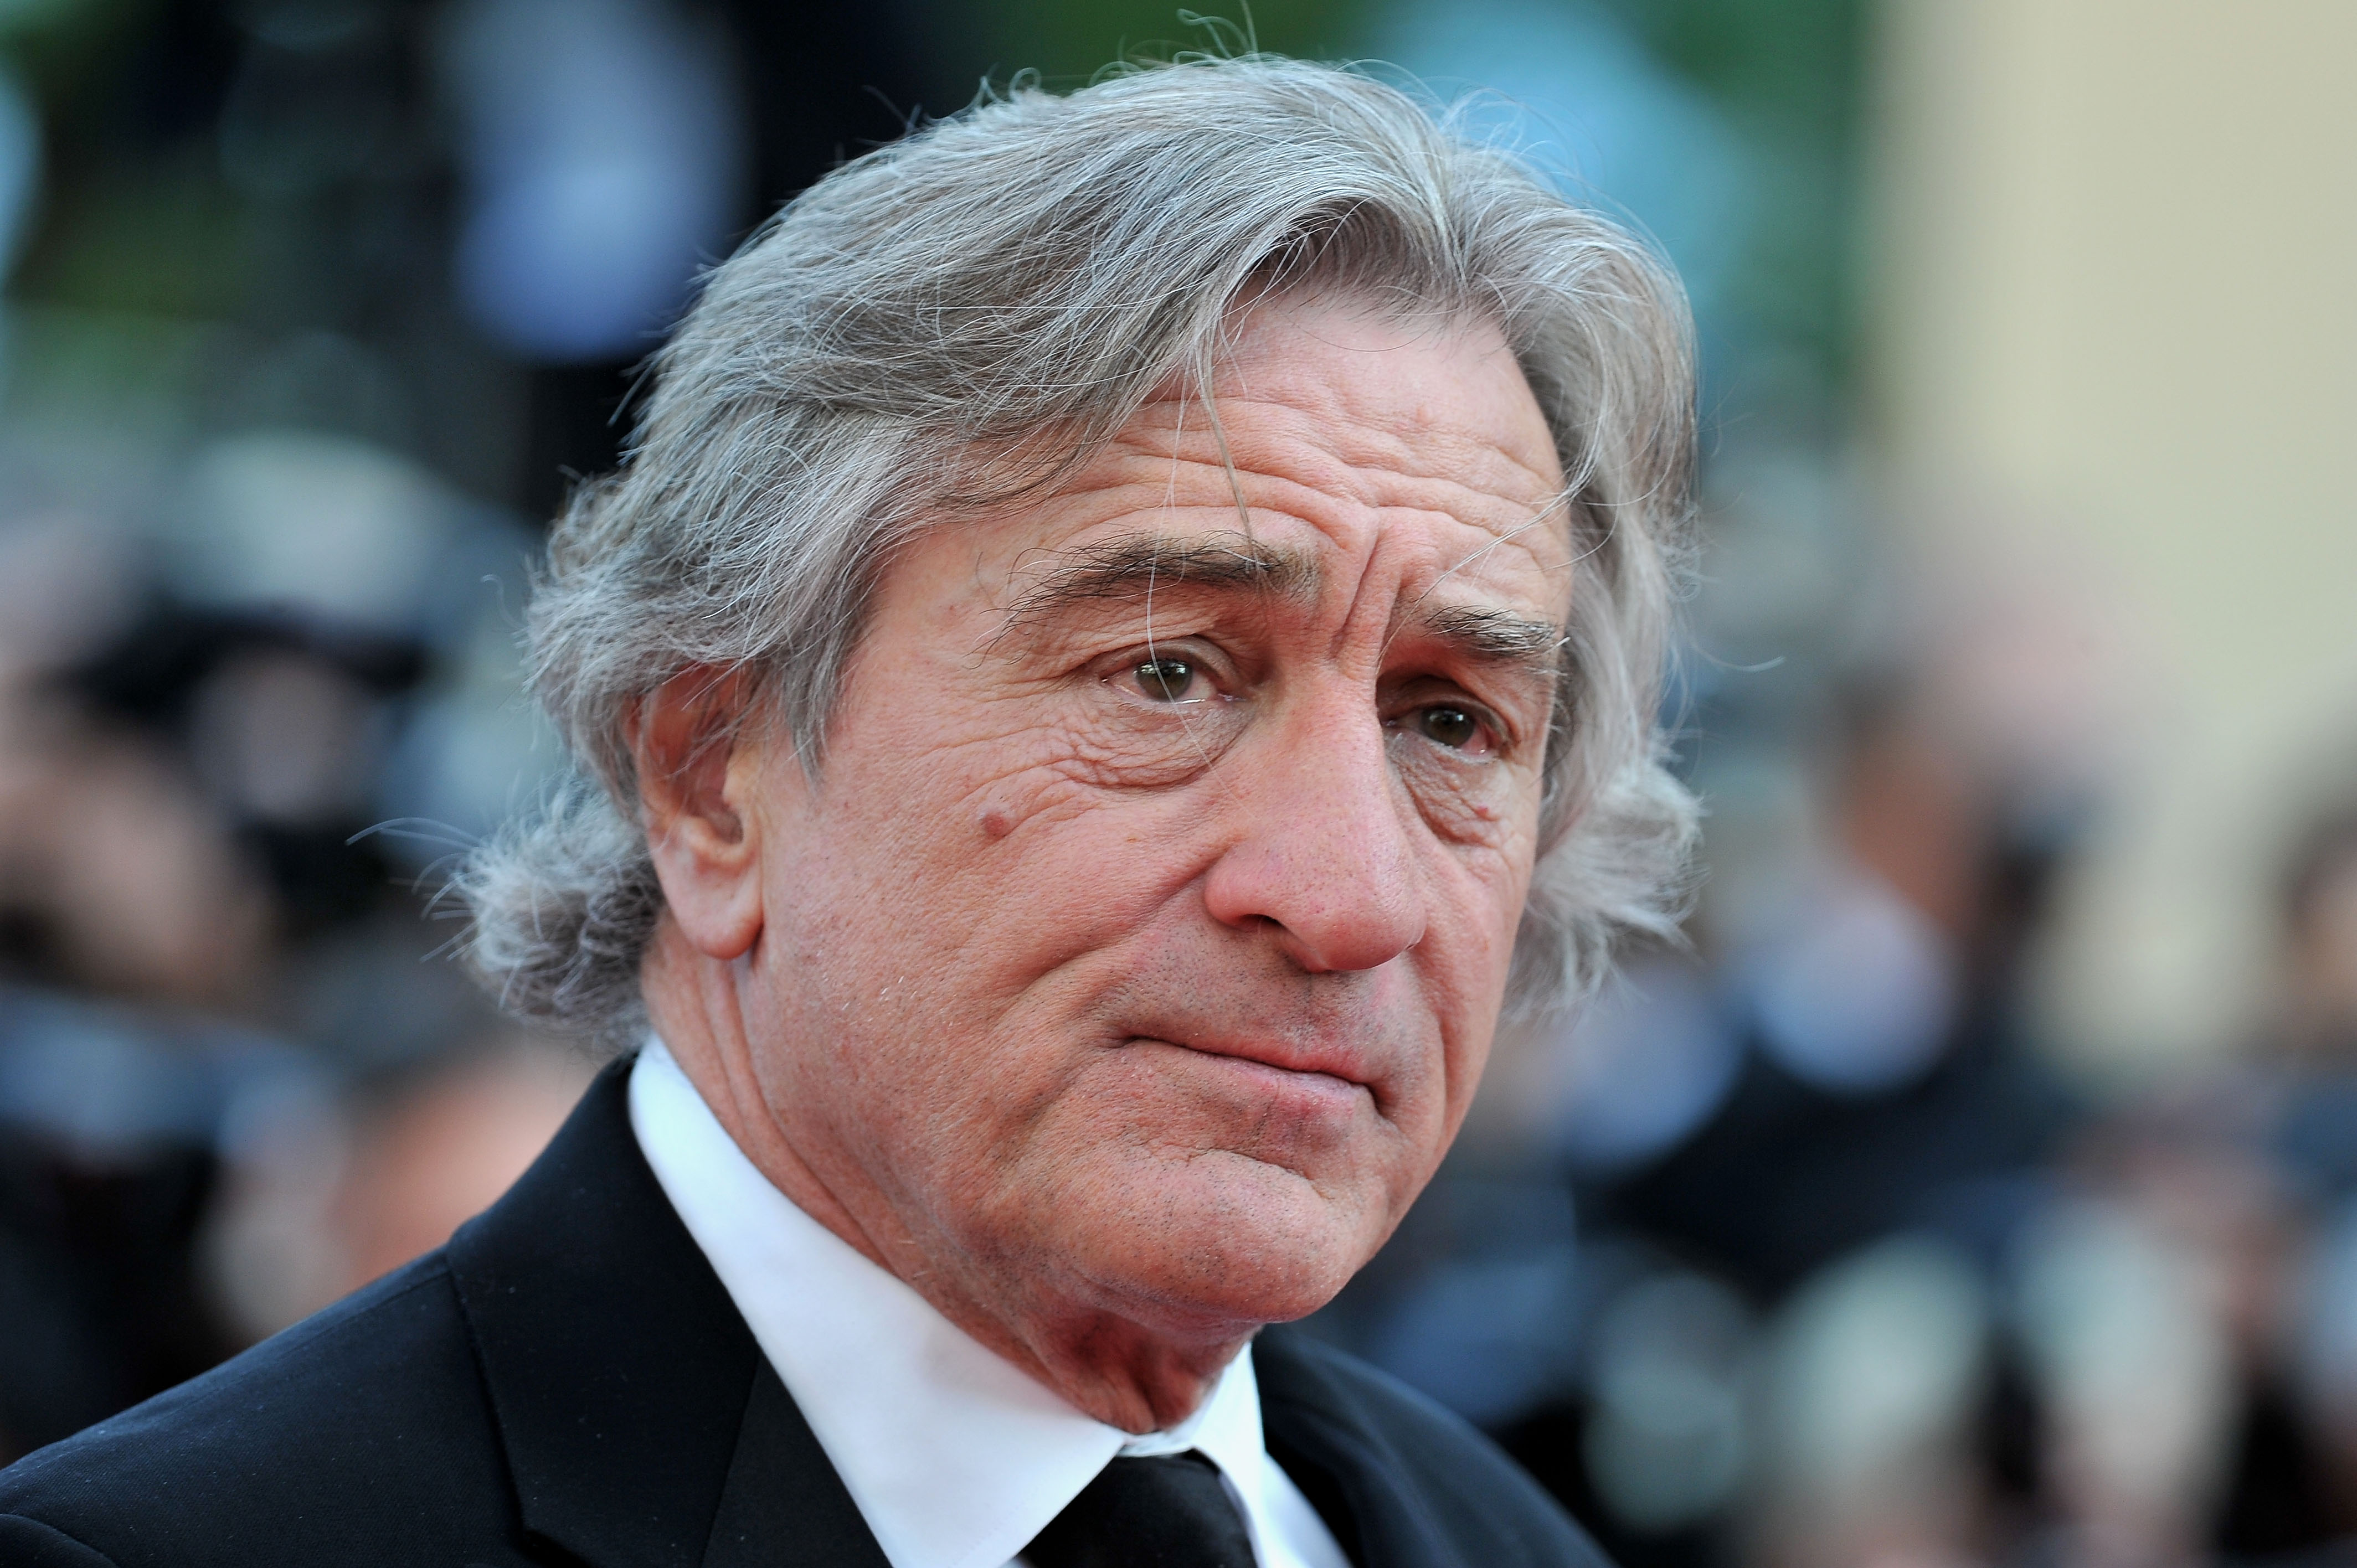 Robert De Niro au 65ème Festival de Cannes en 2012 | Source : Getty Images